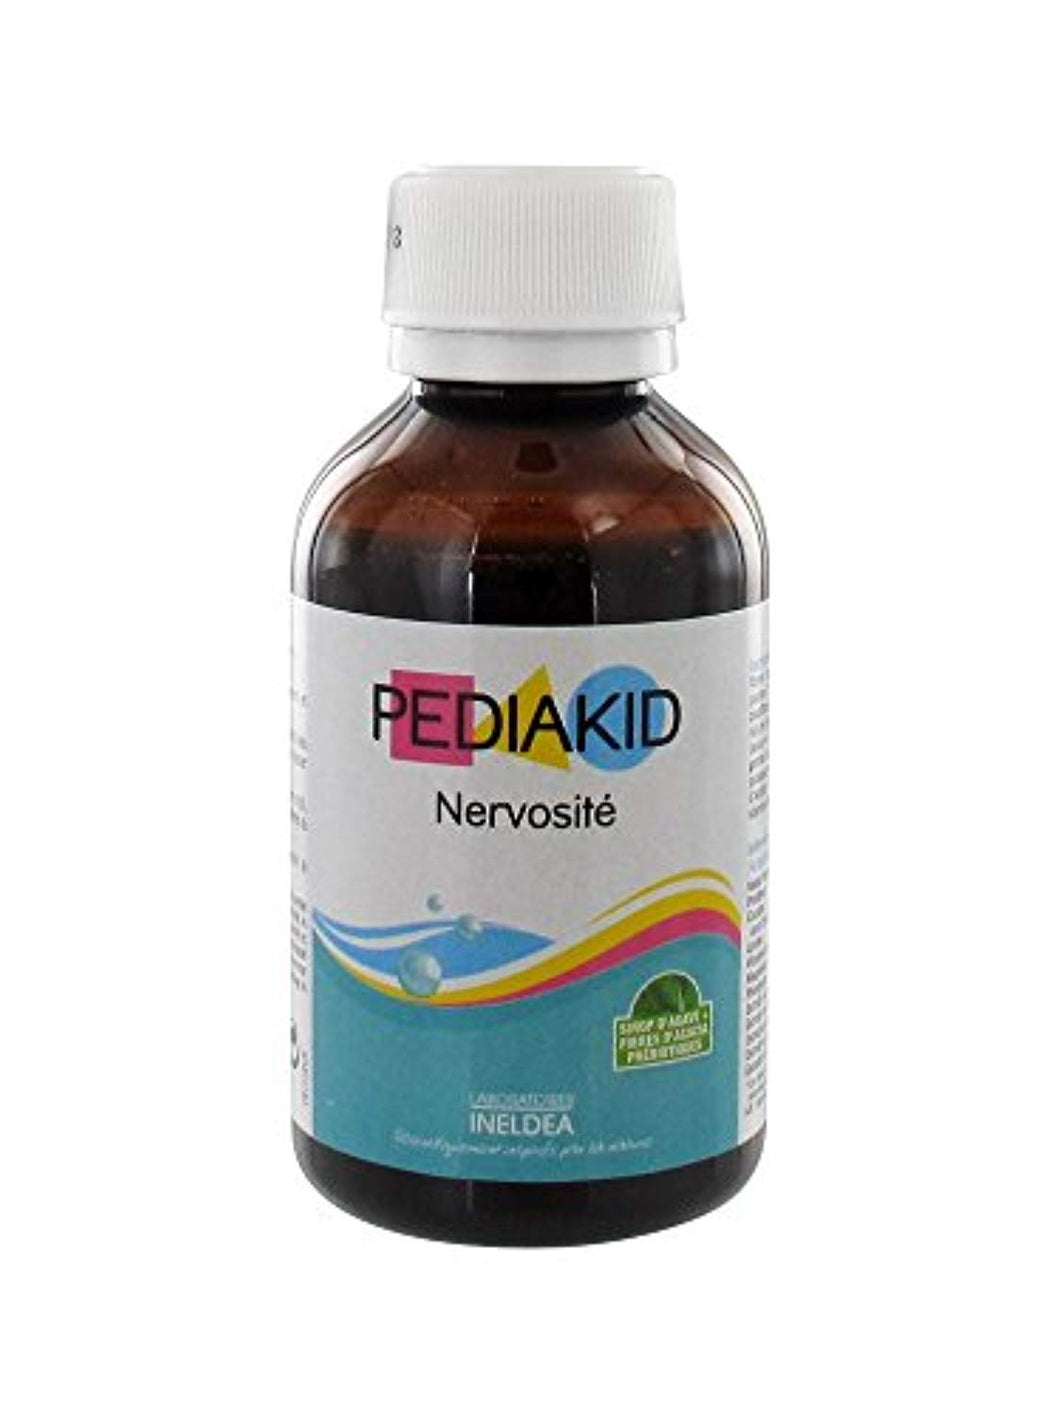 Pediakid - Sirop nervosité au cassis - 125 ml flacon - Favorise l'appaisement et réduit l'agitatio